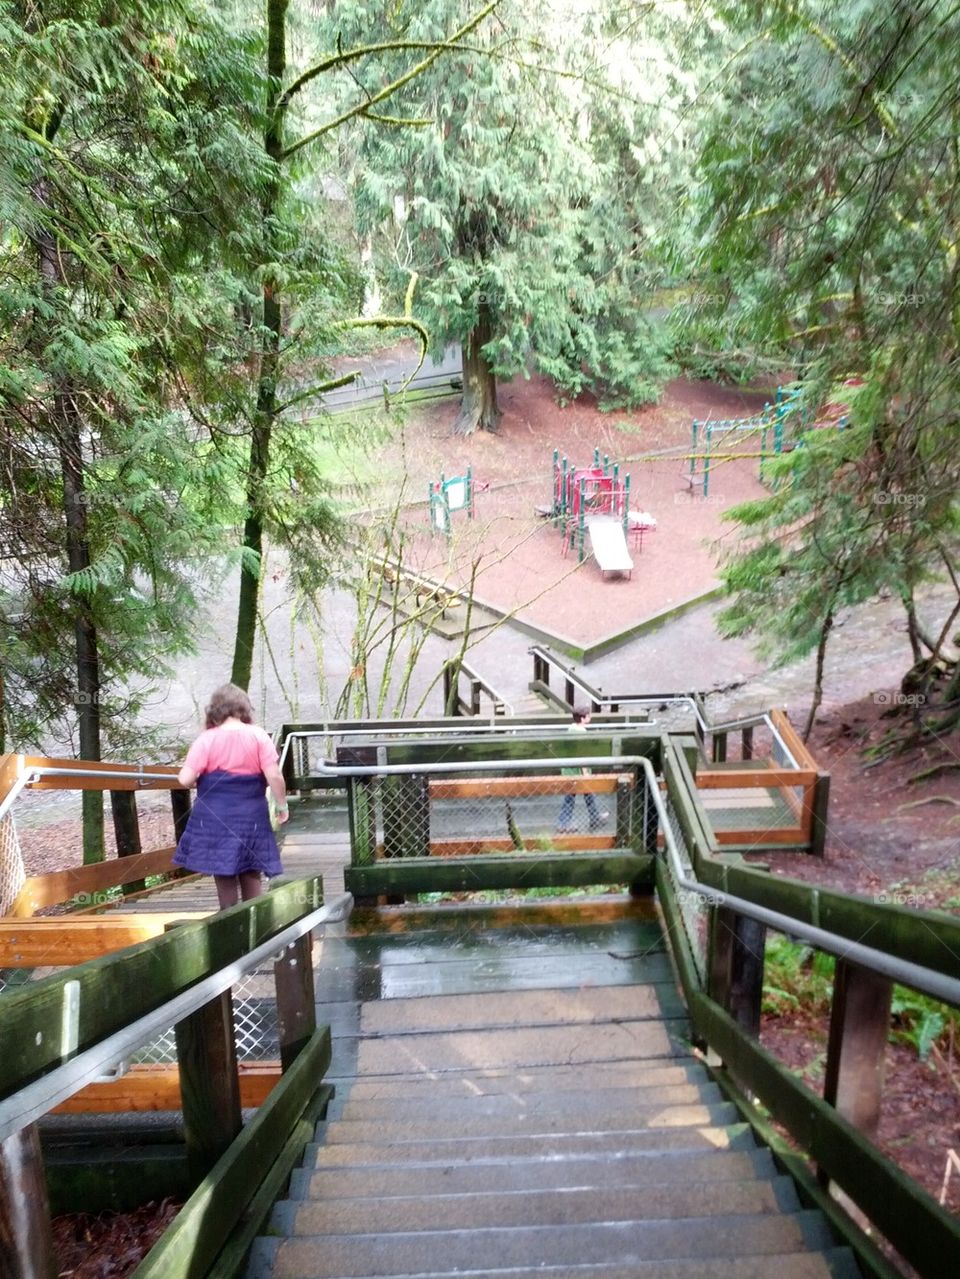 Stairway to playground